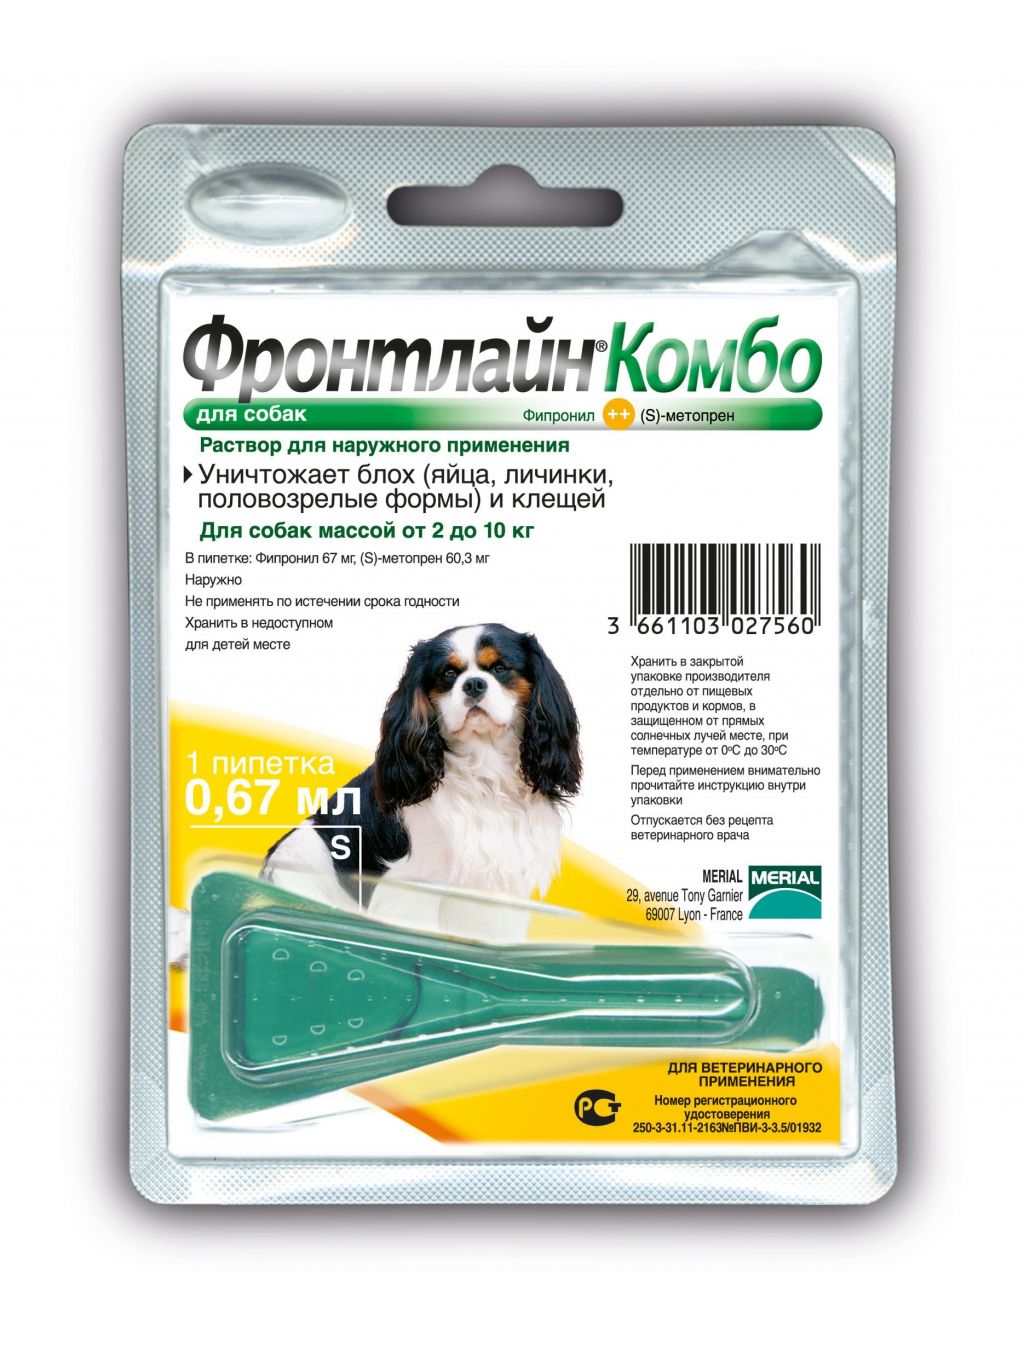 Frontline Combo капли в холку для собак 2-10кг (1пип*0,67мл) фото, цены, купить